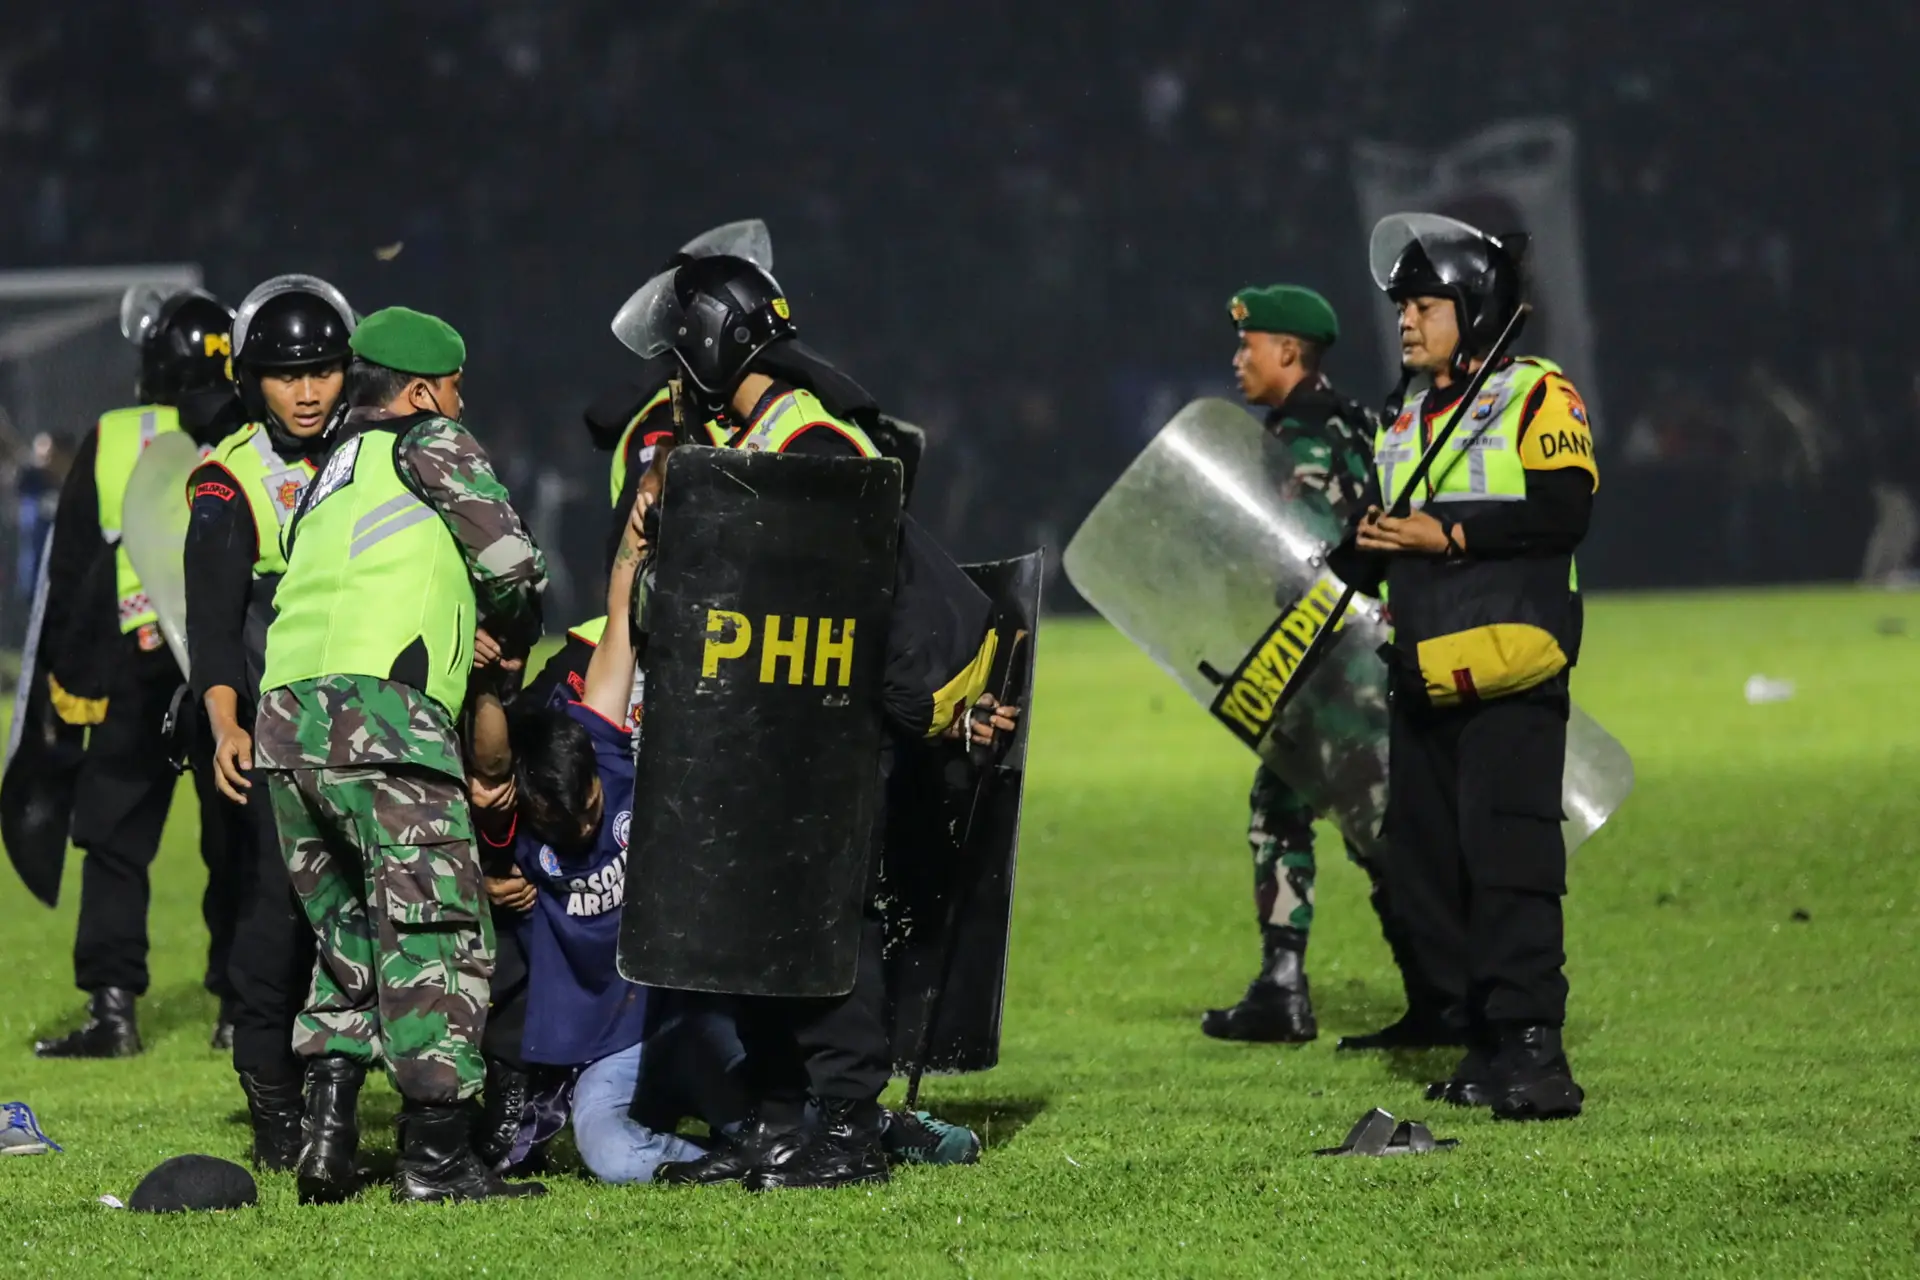 Tragédia na Indonésia: chefe de polícia despedido e nove agentes suspensos